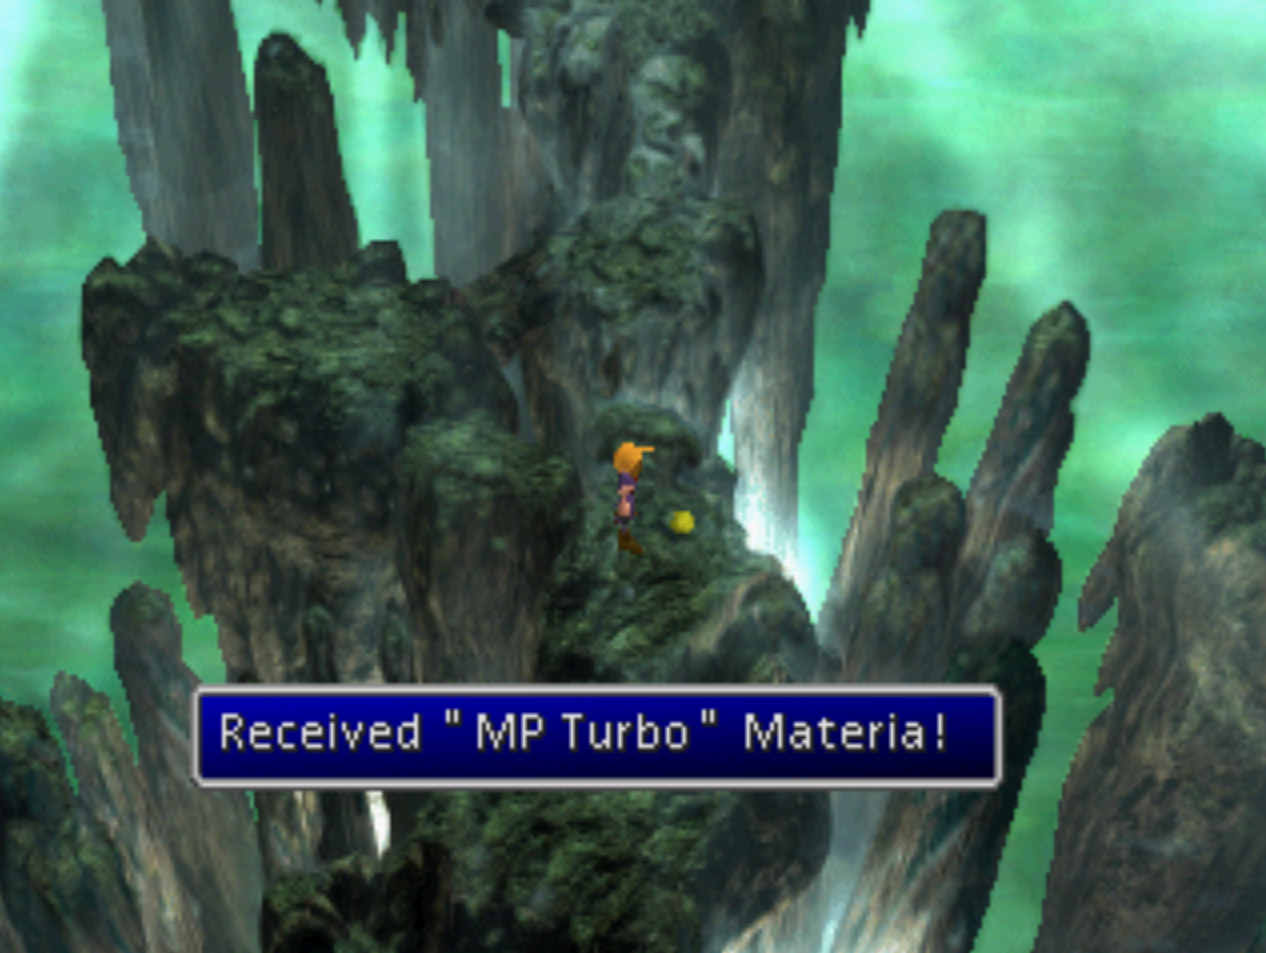 MP Turbo Materia Acquired